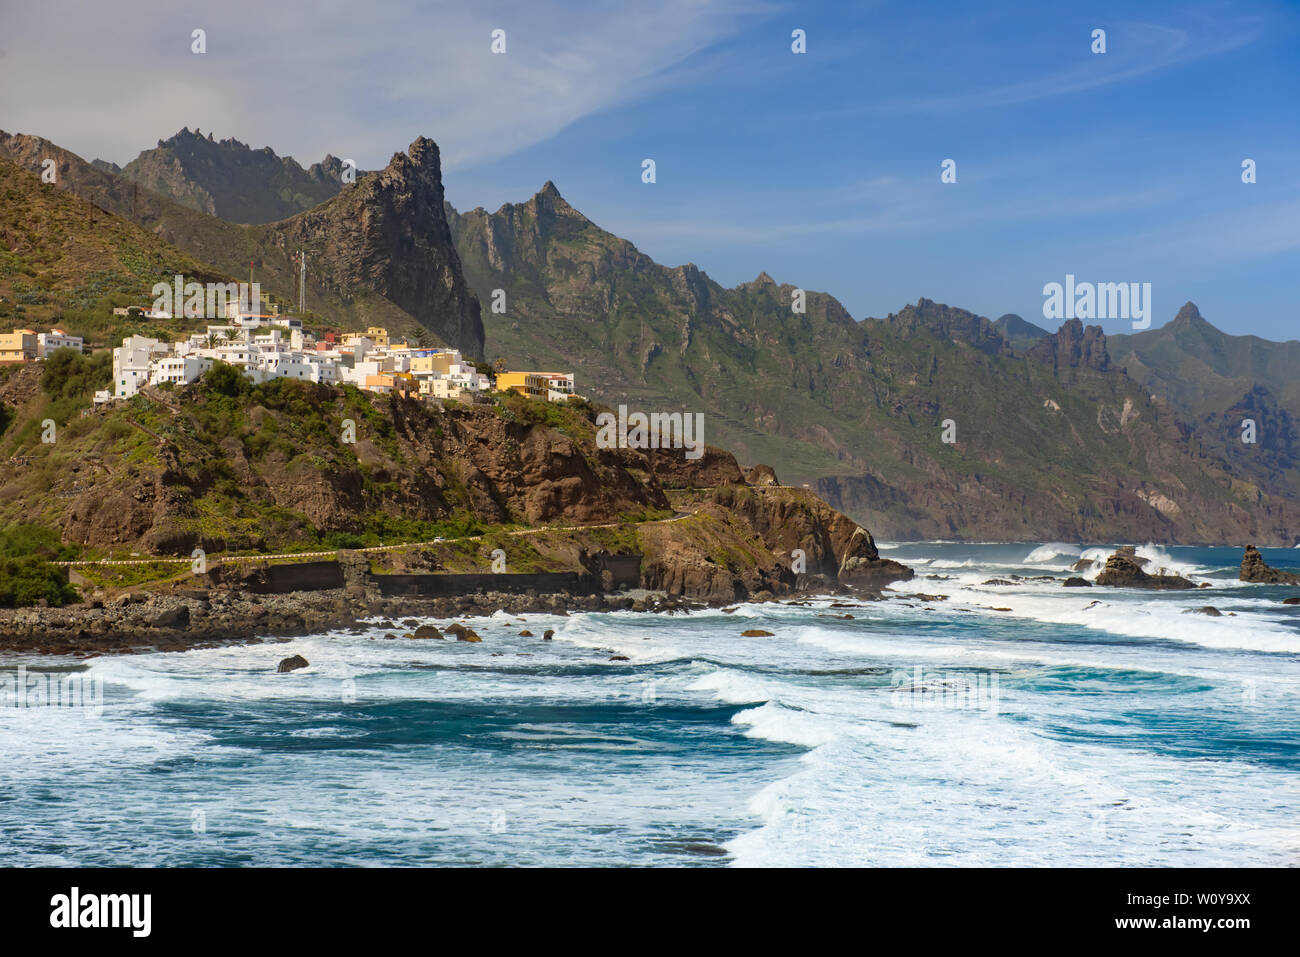 ocean shore near Almaciga, Anaga, Tenerife island Stock Photo